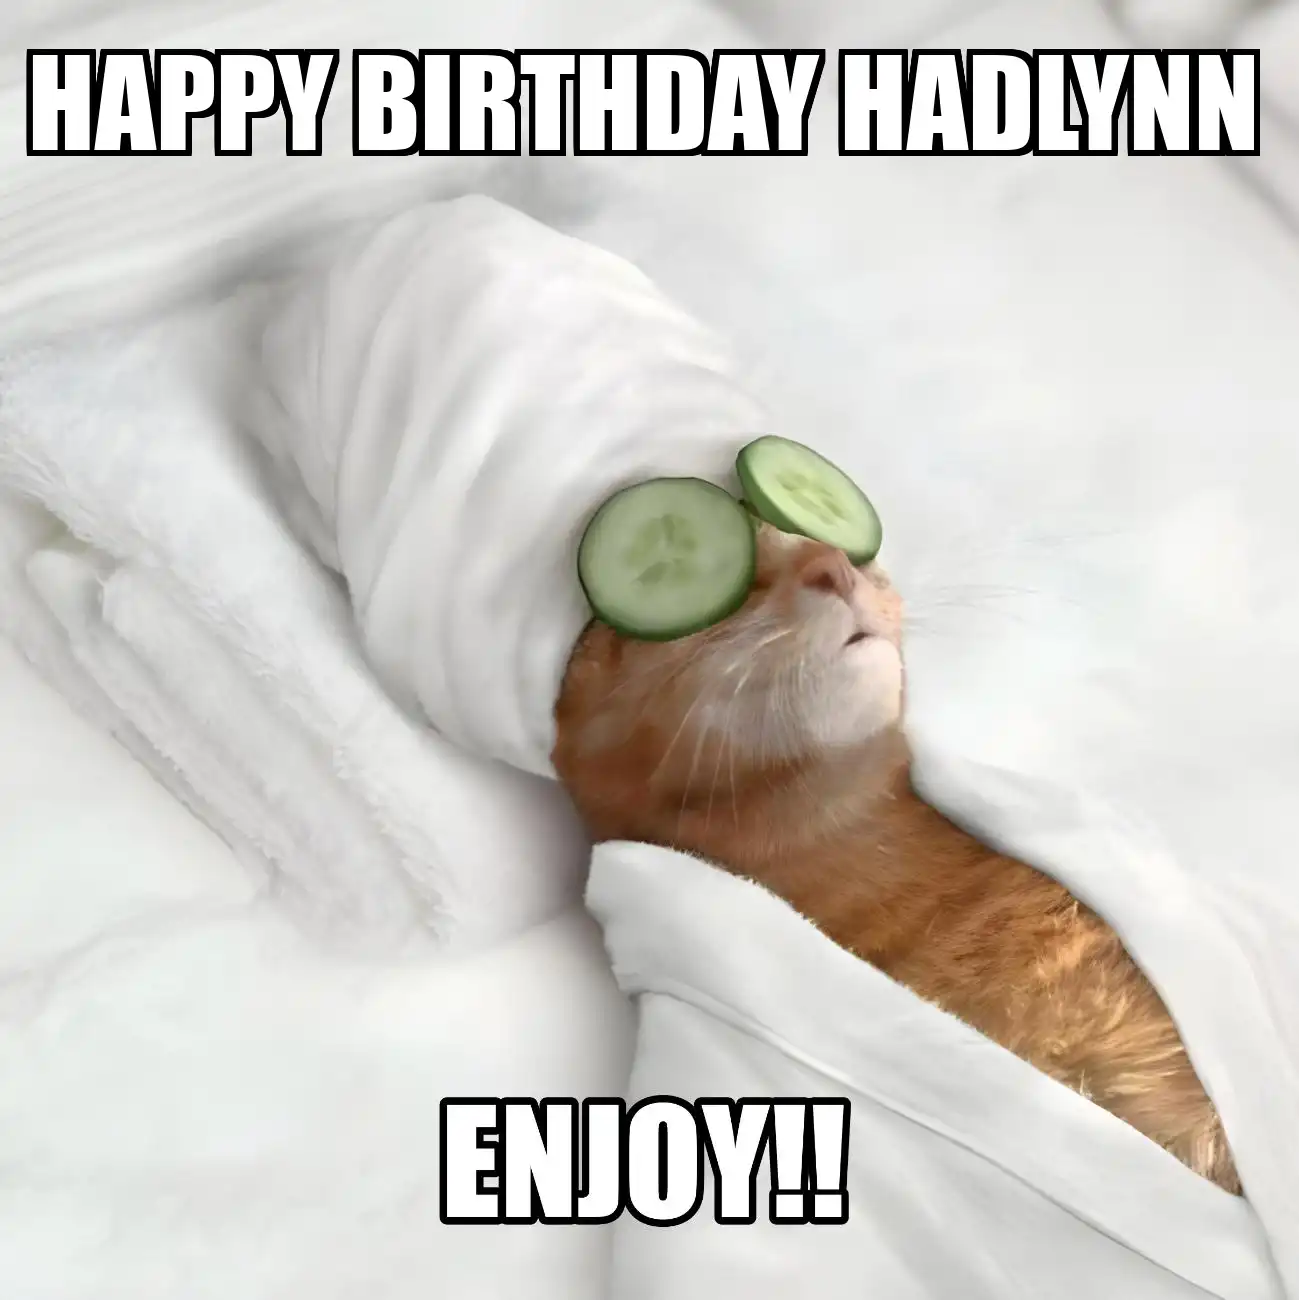 Happy Birthday Hadlynn Enjoy Cat Meme